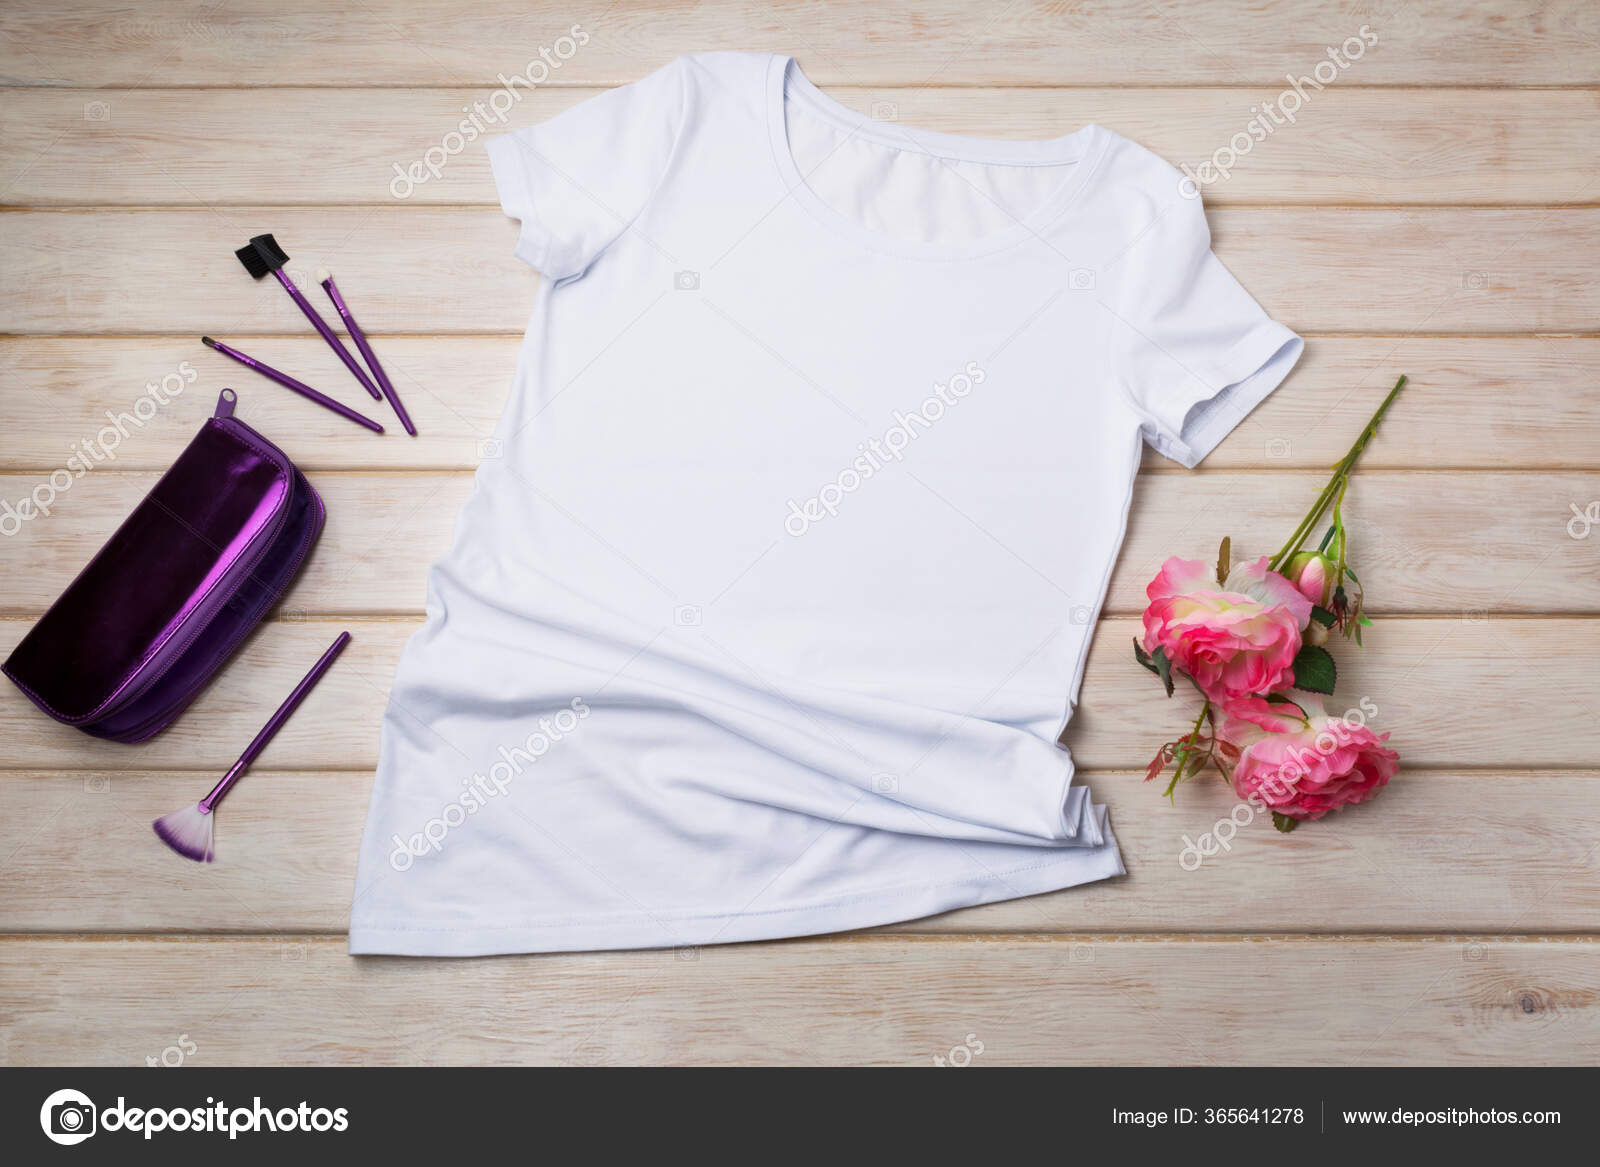 Download Wanita Kulit Putih Kaus Mockup Dengan Tas Kosmetik Ungu Dan Stok Foto C Tasipas 365641278